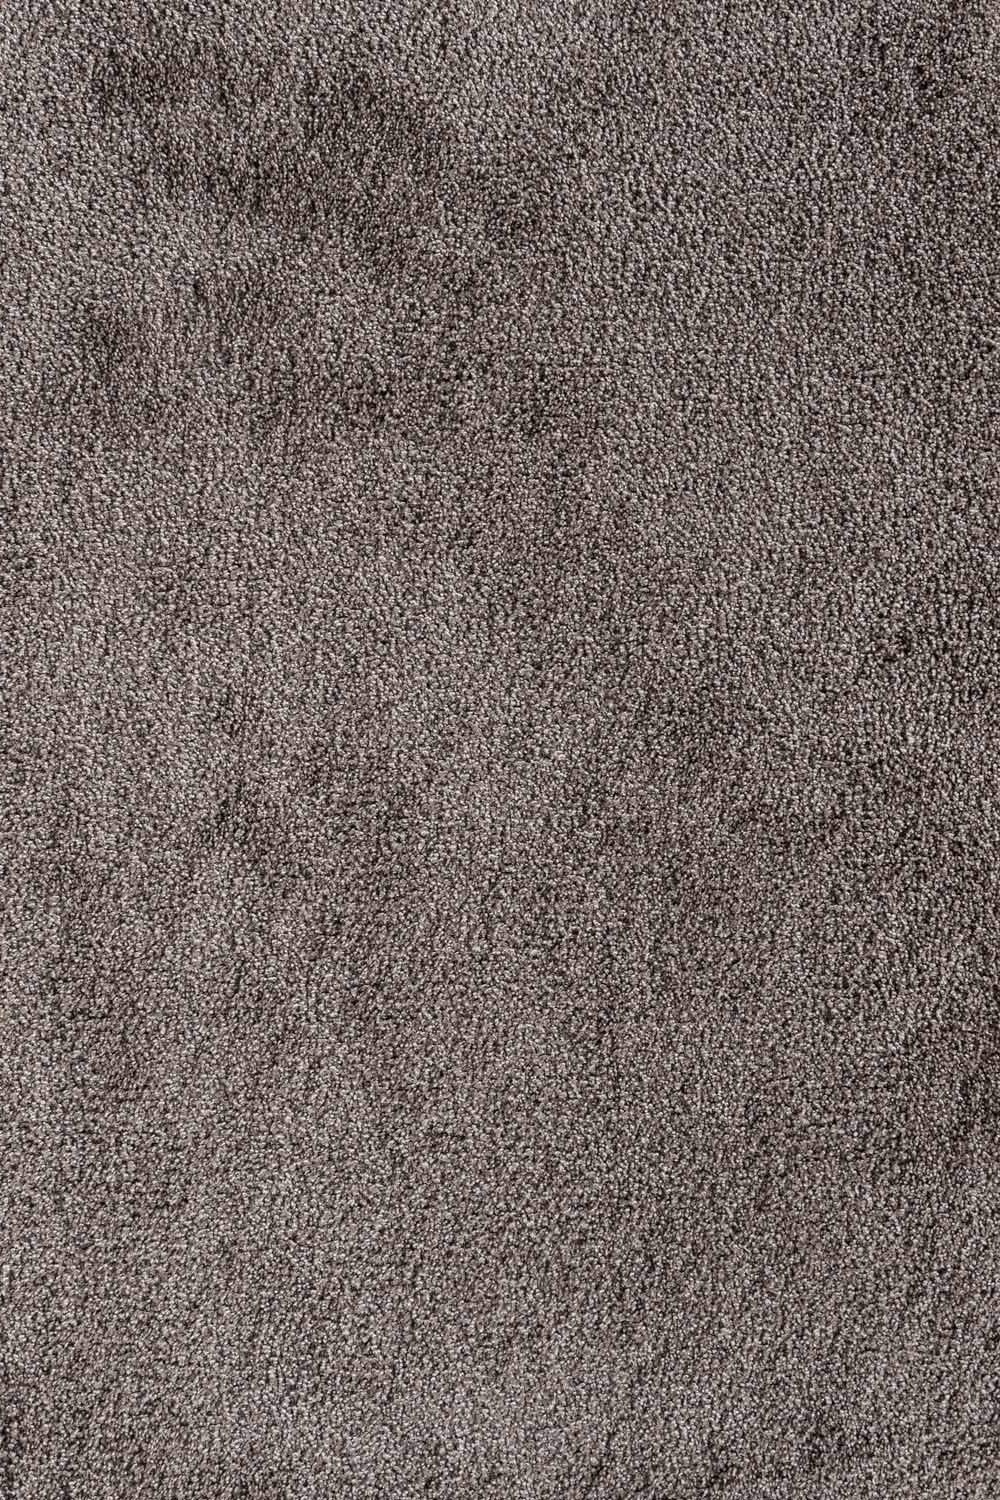 Metrážny koberec VERMONT 90 400 cm